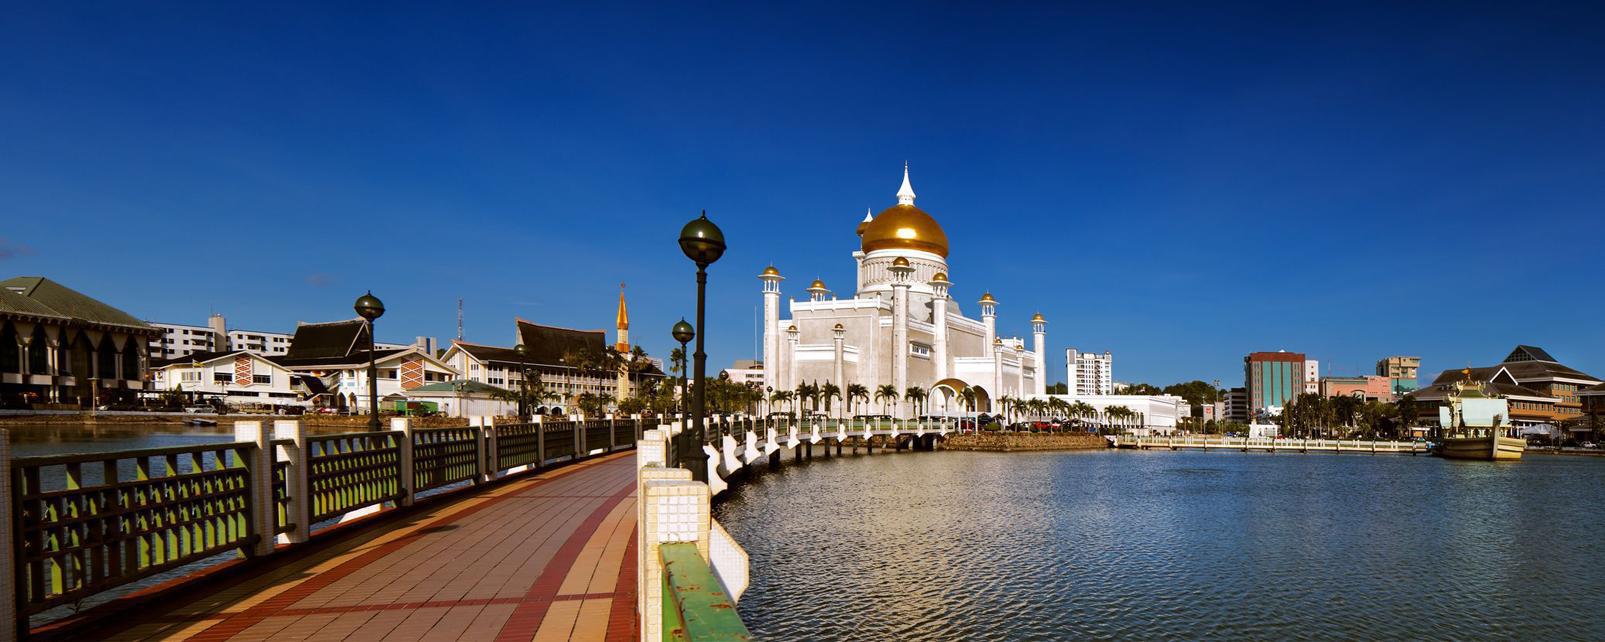 Berkunjung ke Brunei Darussalam, Negara Kecil namun Super Kaya